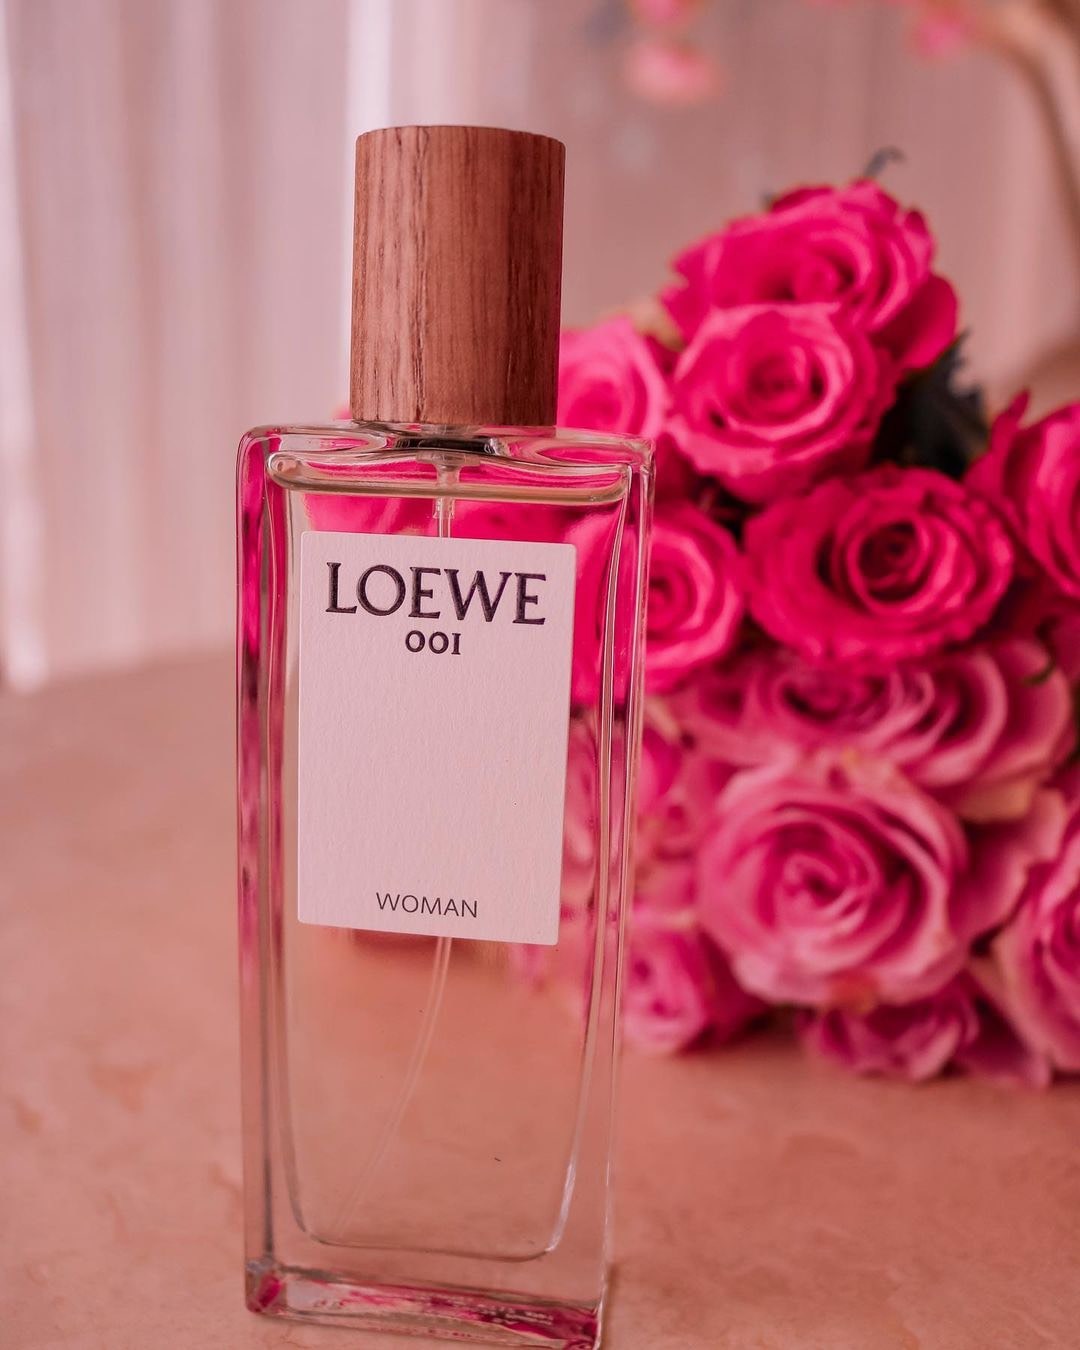 Loewe 001 Woman Eau De Parfum 2 - Nuochoarosa.com - Nước hoa cao cấp, chính hãng giá tốt, mẫu mới